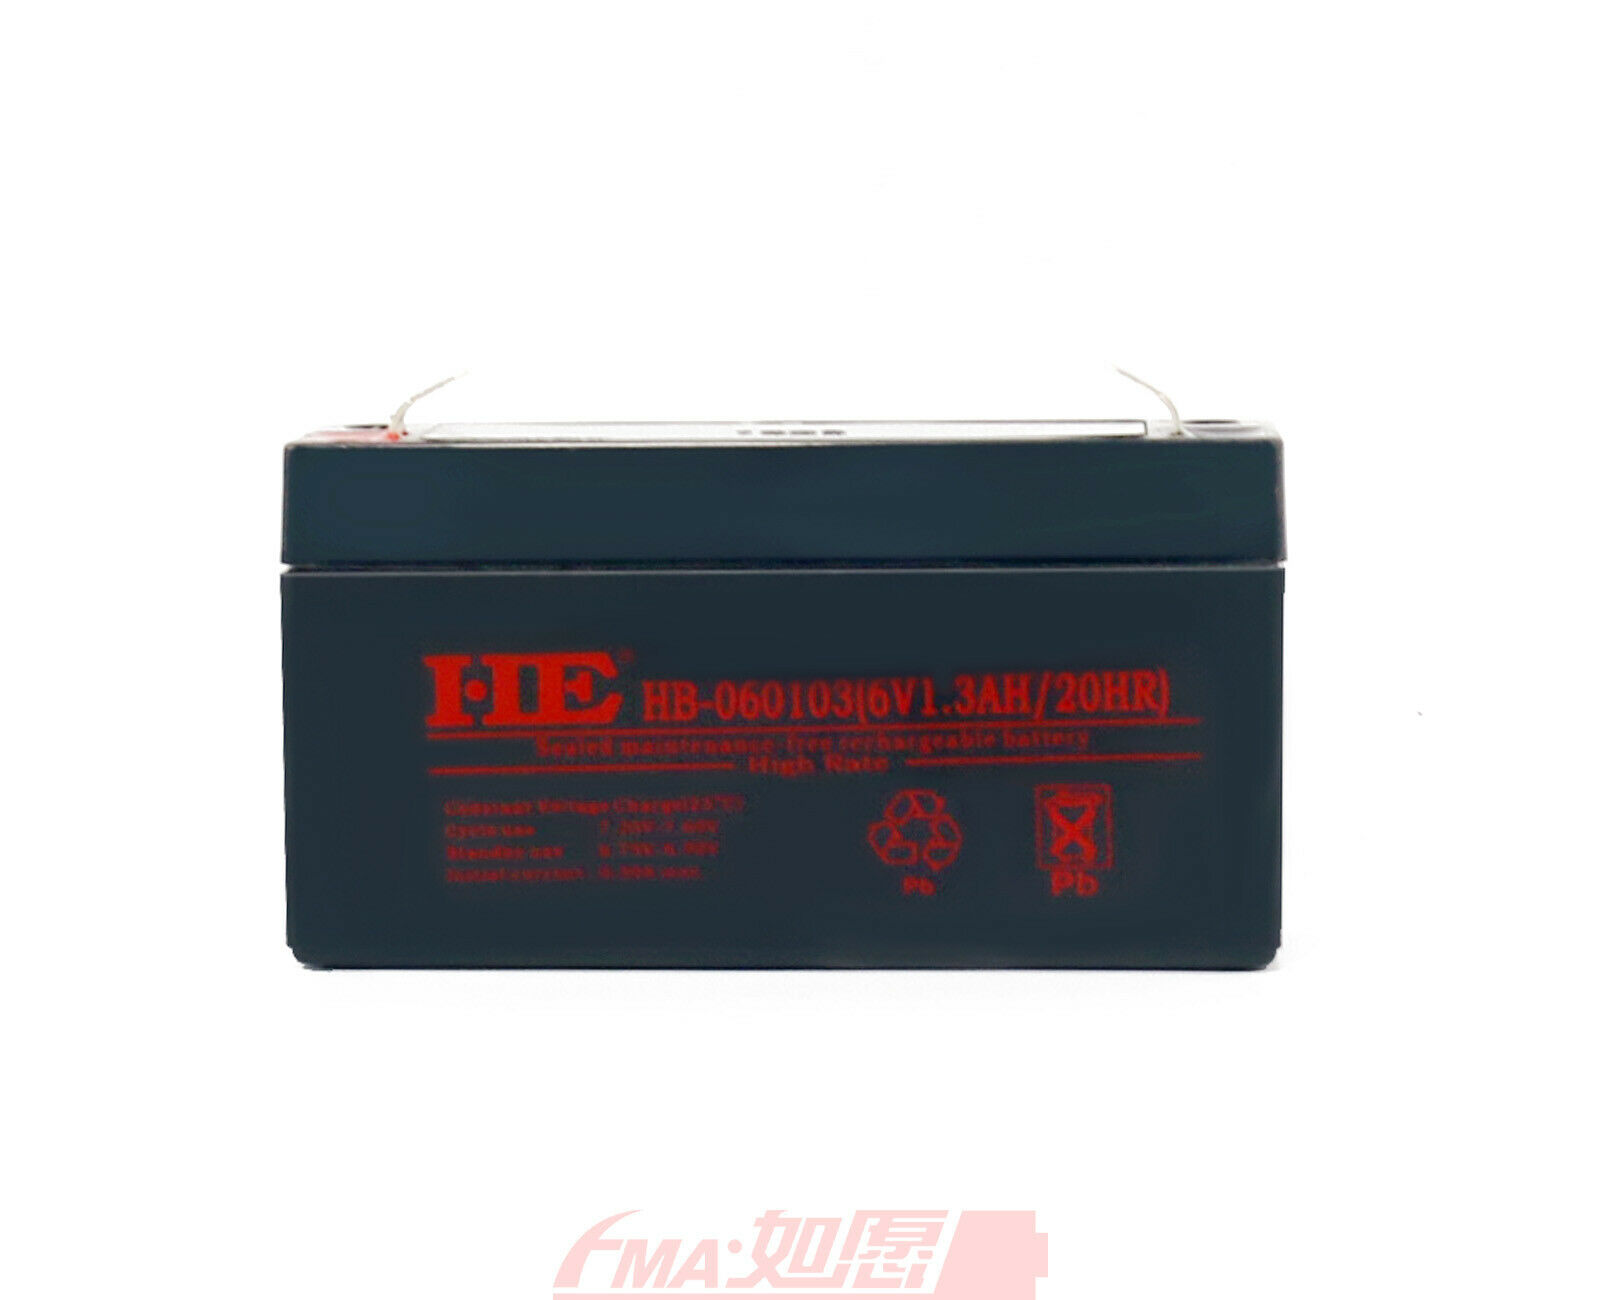 SLA Sealed Lead Acid Battery 6V 1.3Ah For Exit Backup Power Emergency Light